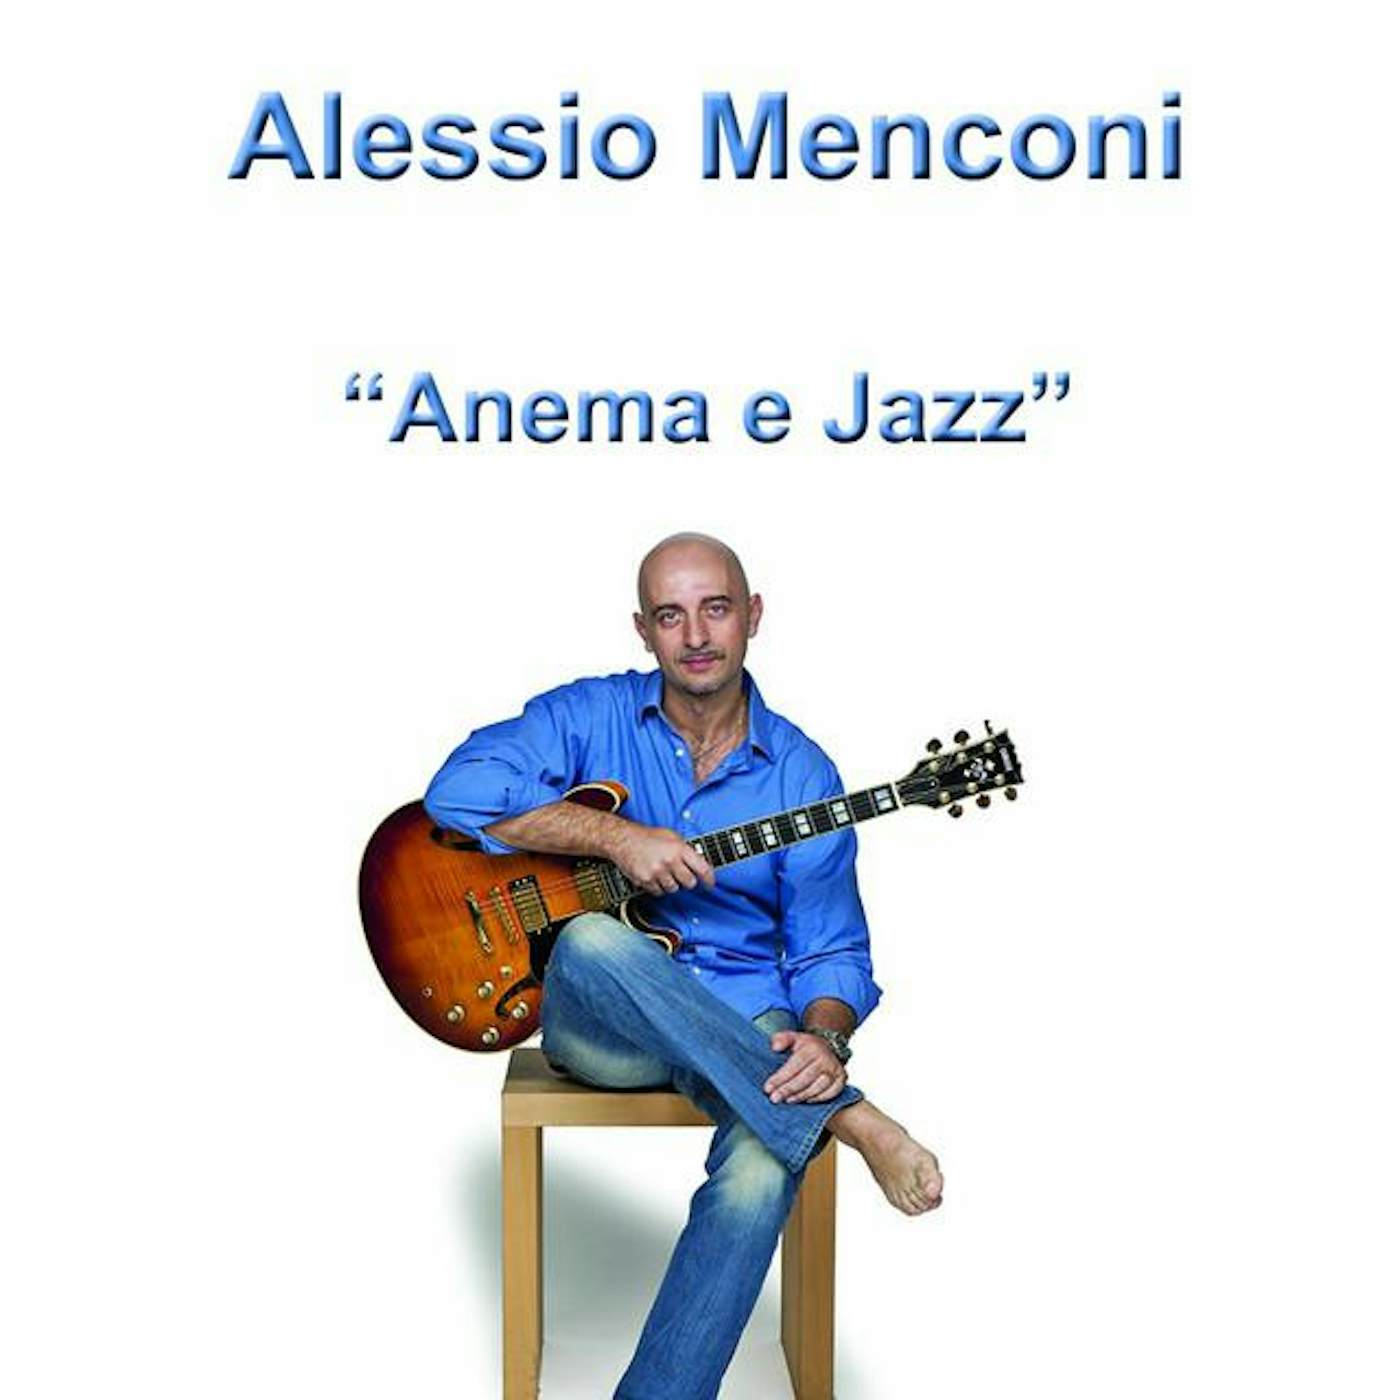 Alessio Menconi